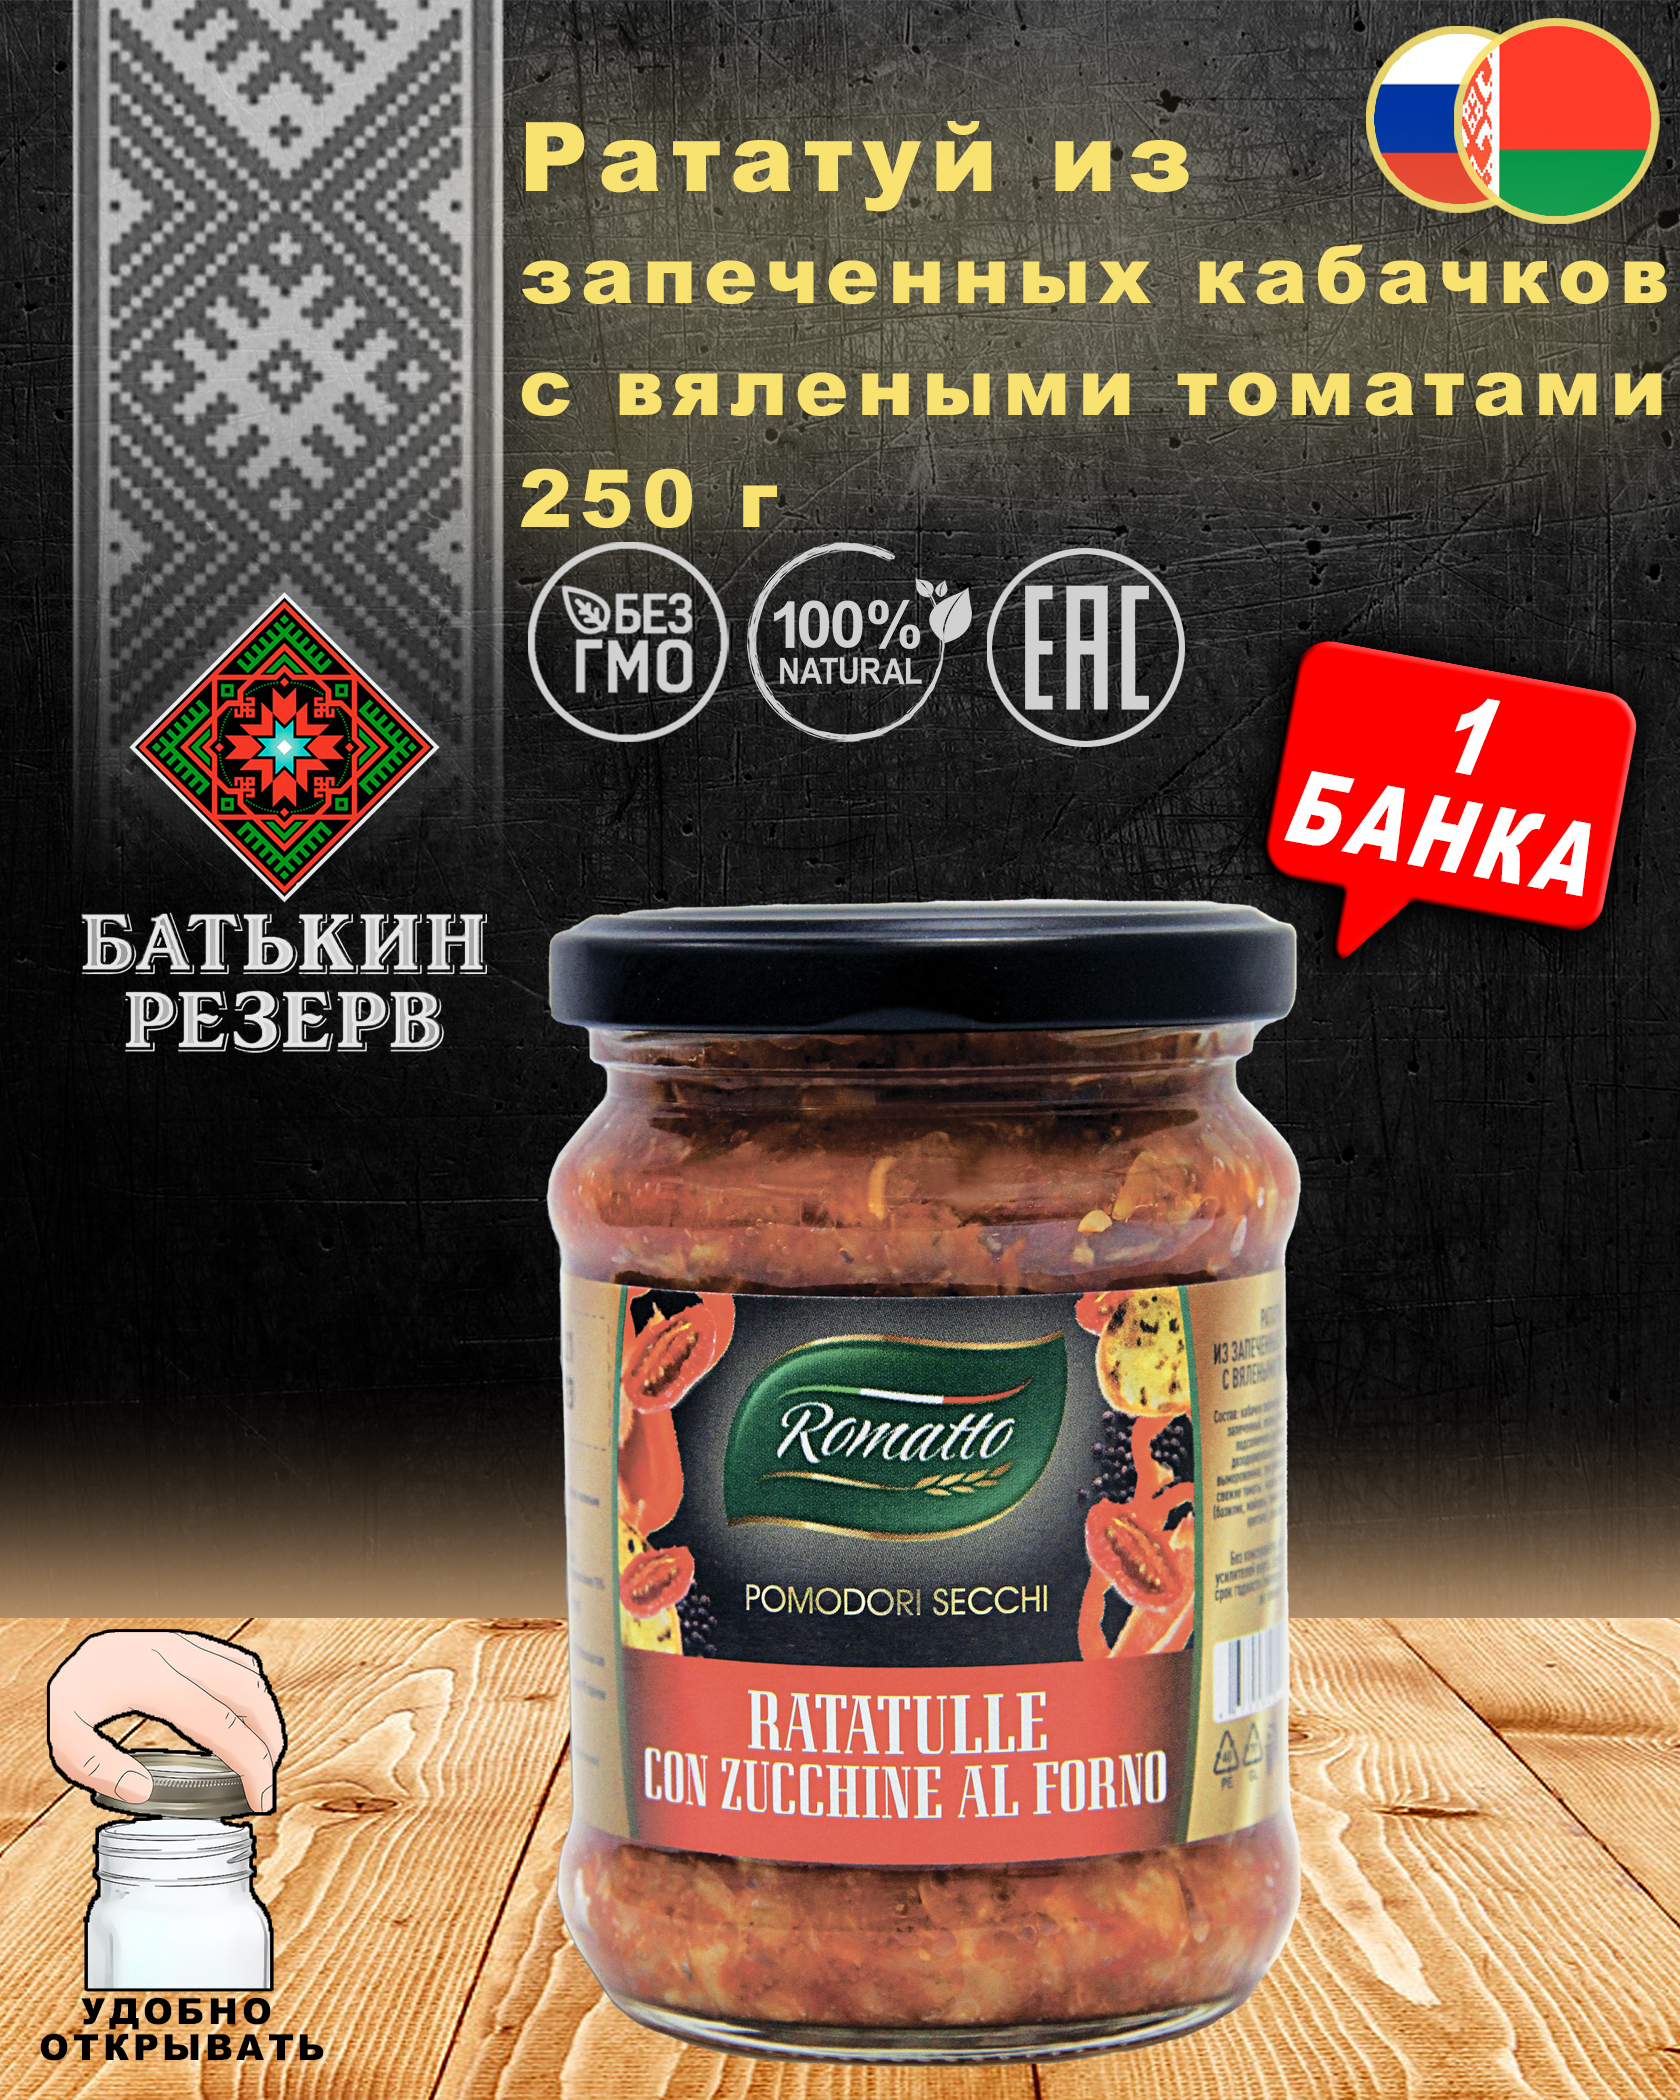 Рататуй из запеченных кабачков с вялеными томатами, Romatto, ТУ, 1 шт. по 250 г